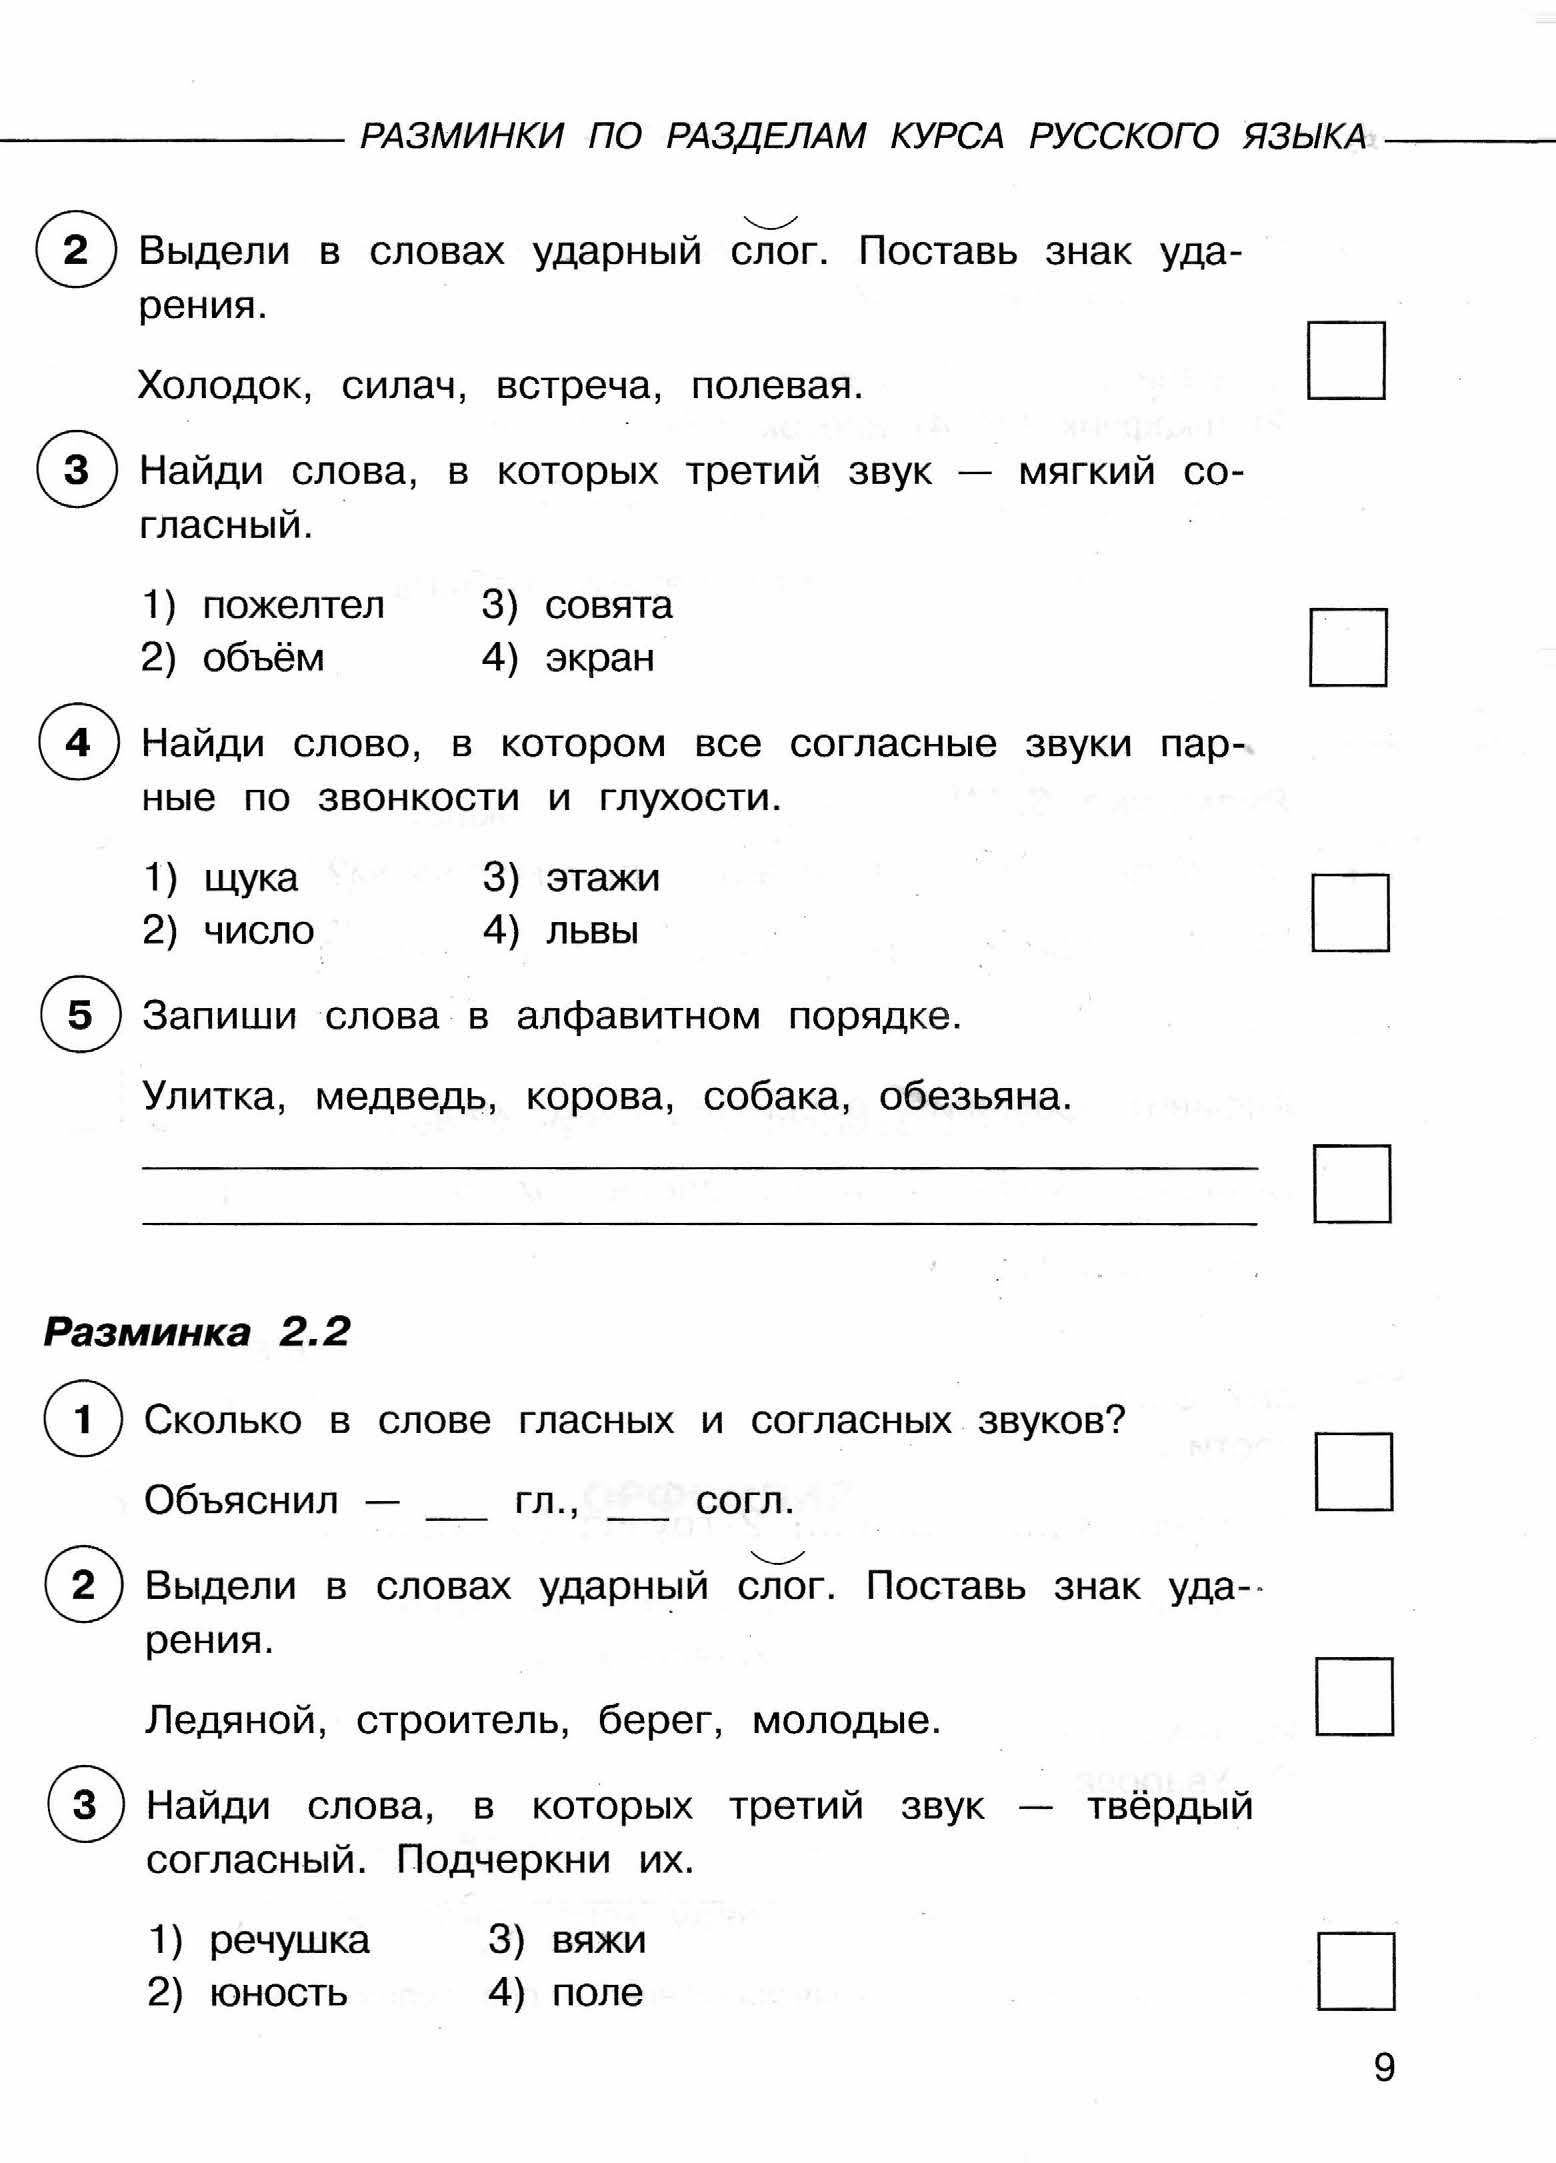 Учи ру впр русский язык 4 класс